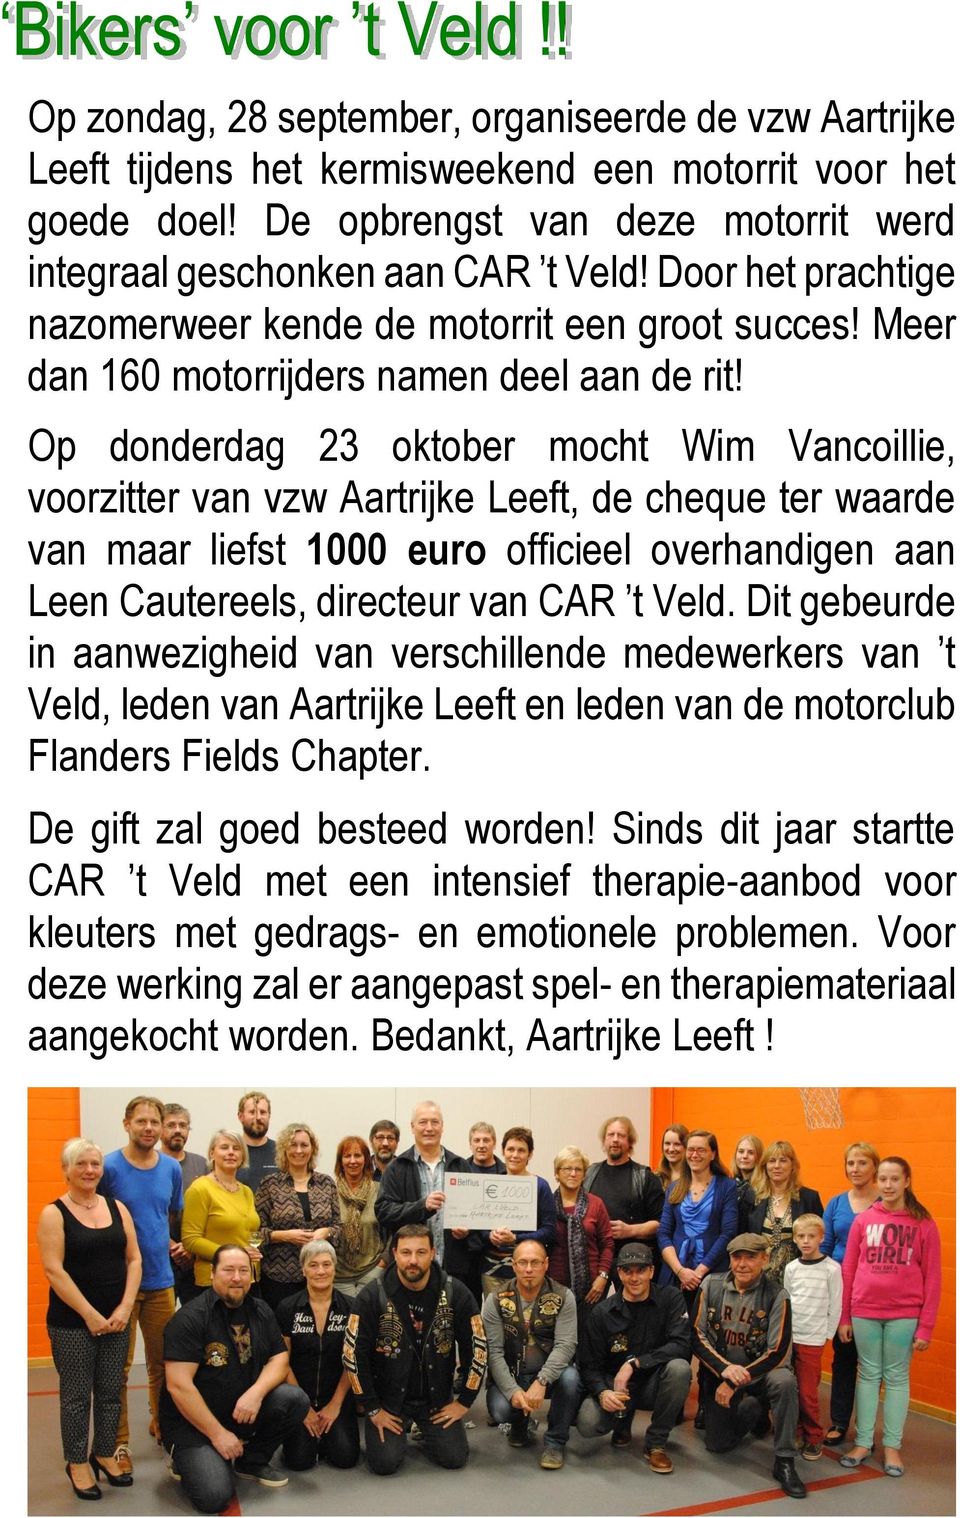 Op donderdag 23 oktober mocht Wim Vancoillie, voorzitter van vzw Aartrijke Leeft, de cheque ter waarde van maar liefst 1000 euro officieel overhandigen aan Leen Cautereels, directeur van CAR t Veld.